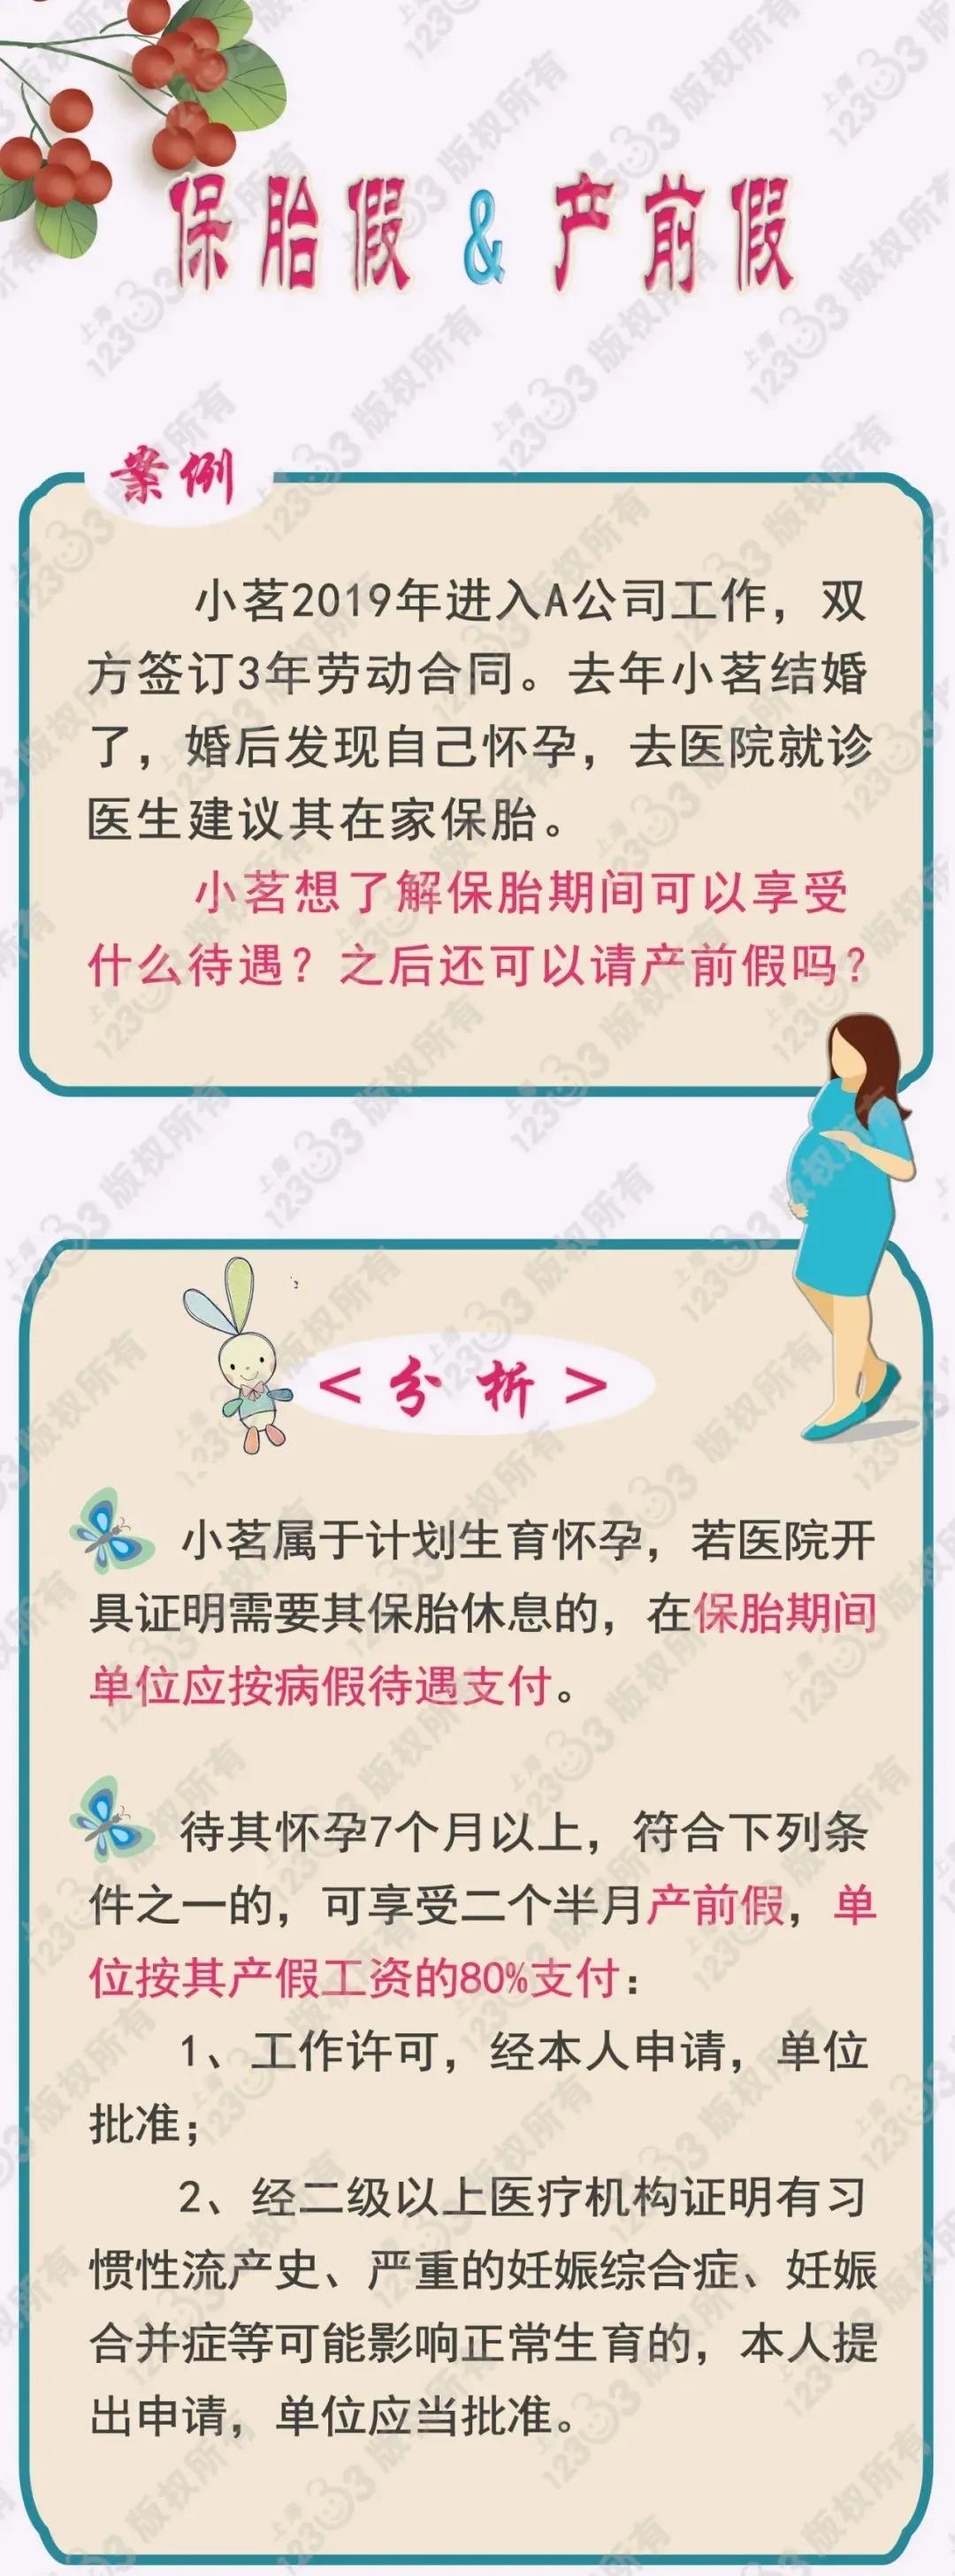 【提示】保胎假和产前假有何区别？来看解读